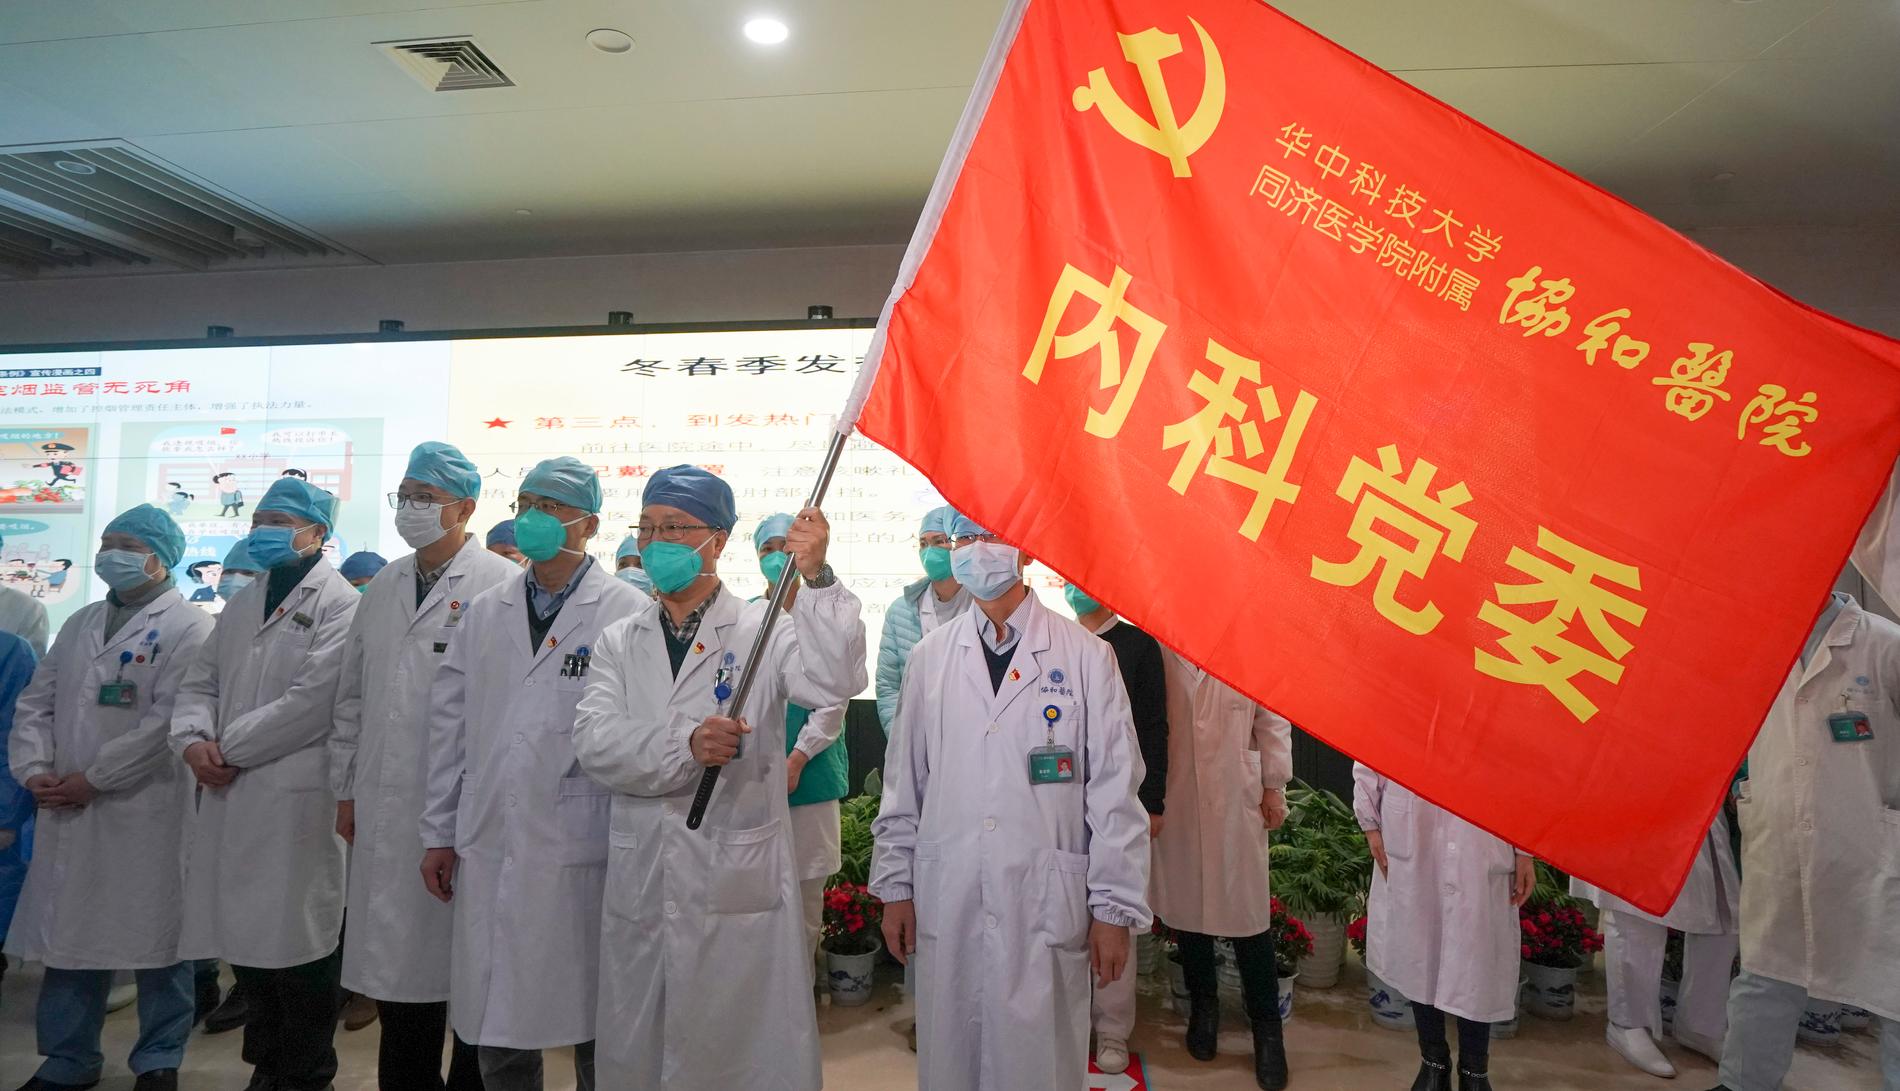 Anställda vid sjukhus och universitet i Wuhan i Kina samlas för att bilda en gemensam front mot coronavirusutbrottet.